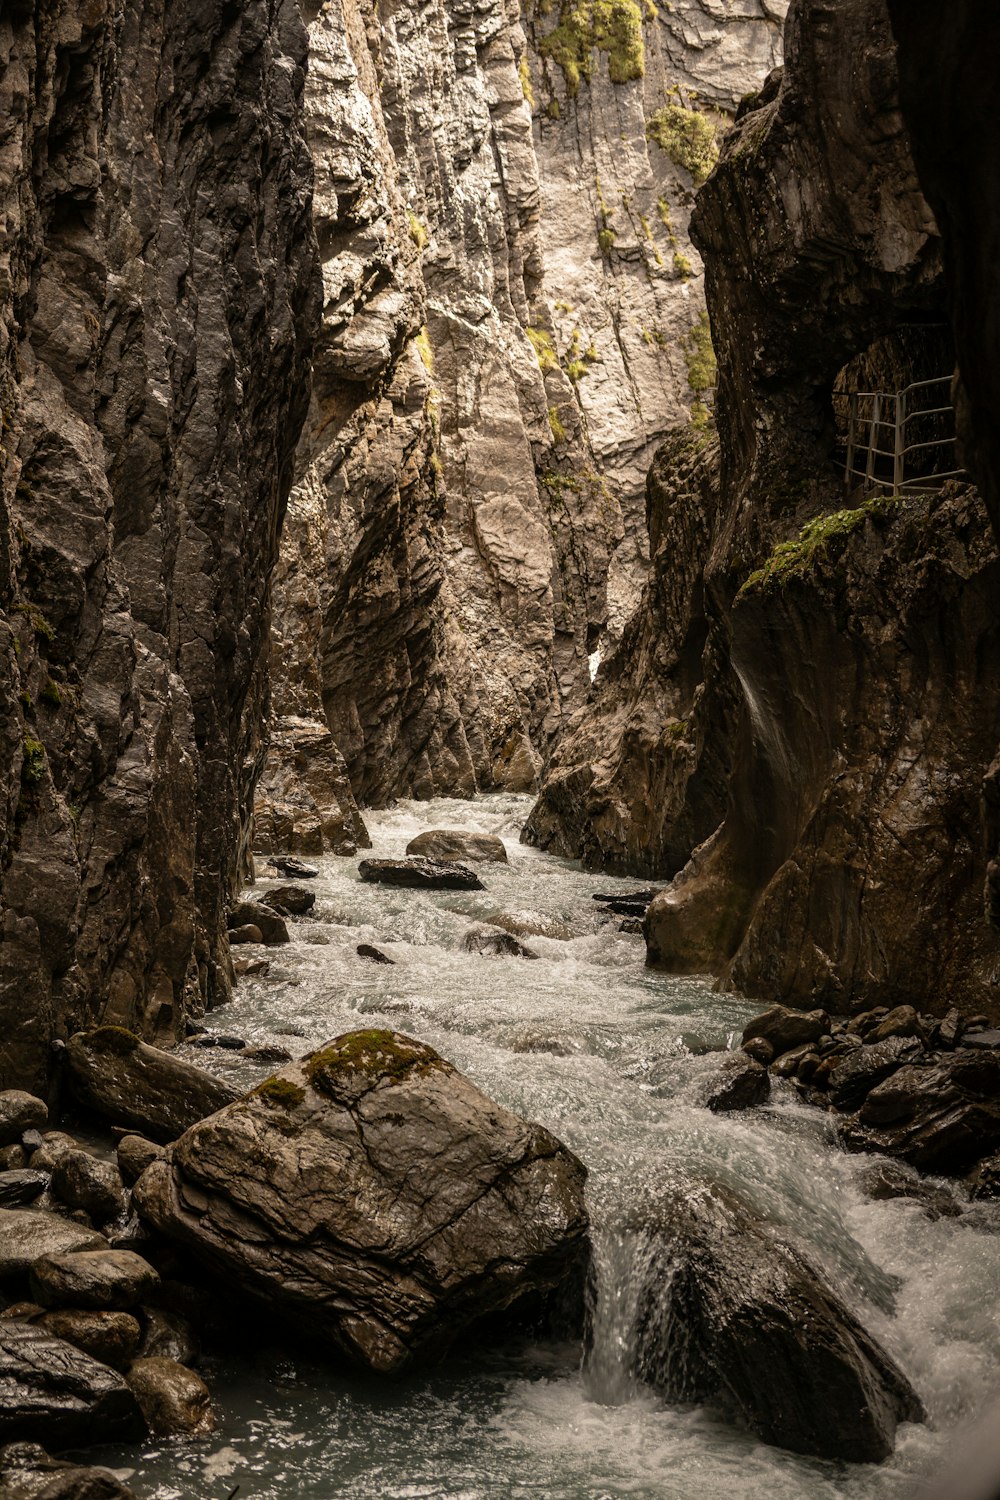 a river running through a narrow rocky canyon